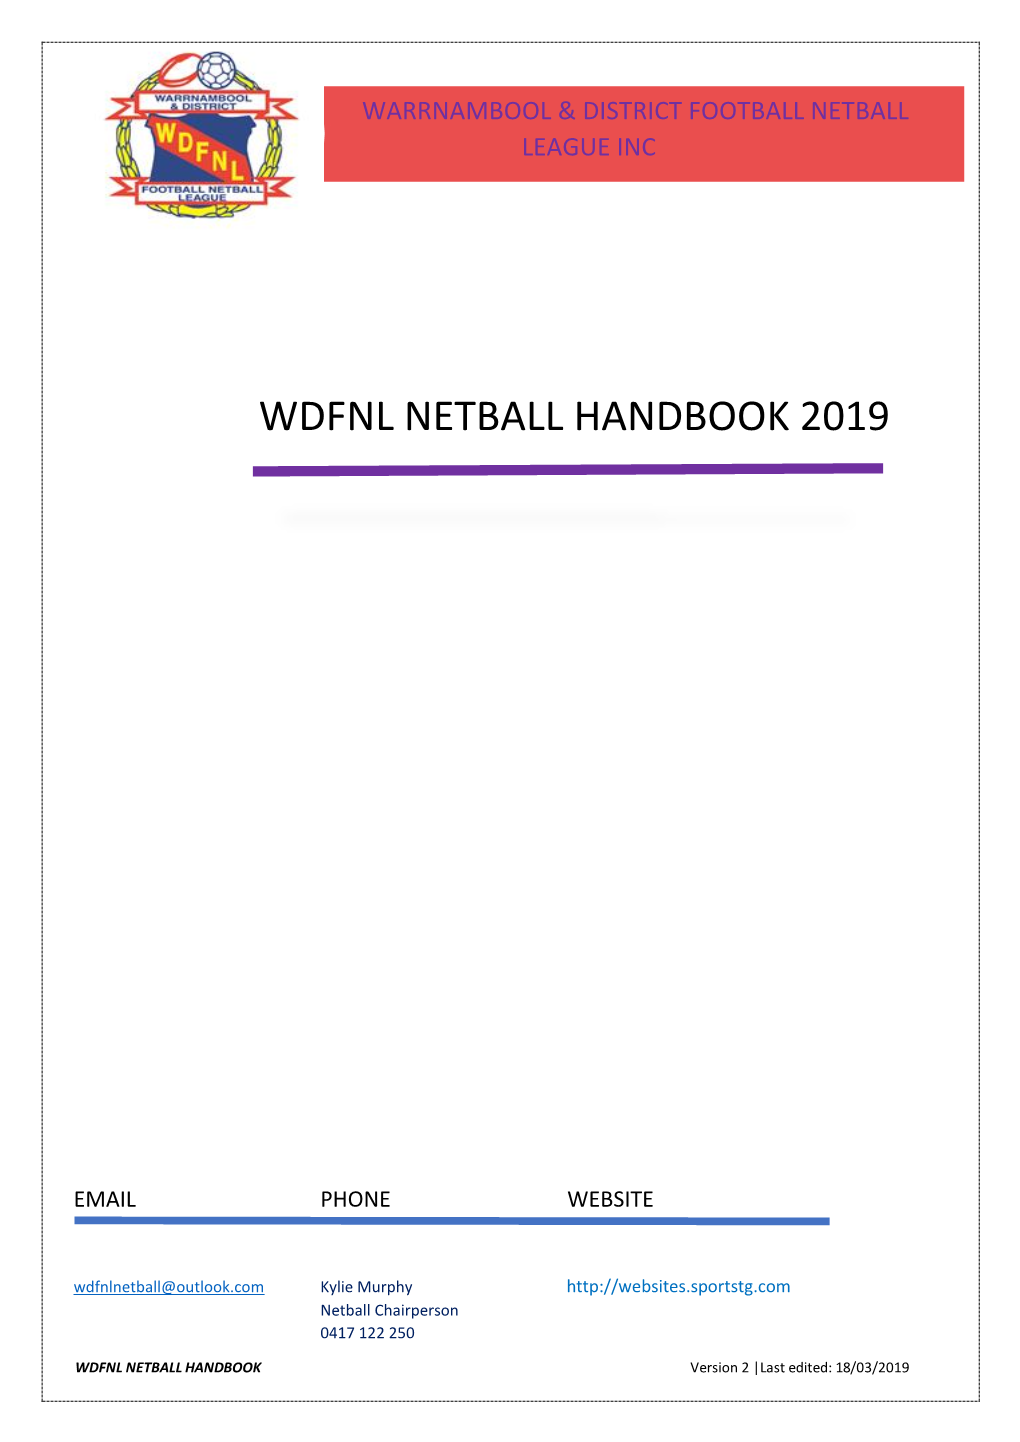 Wdfnl Netball Handbook 2019